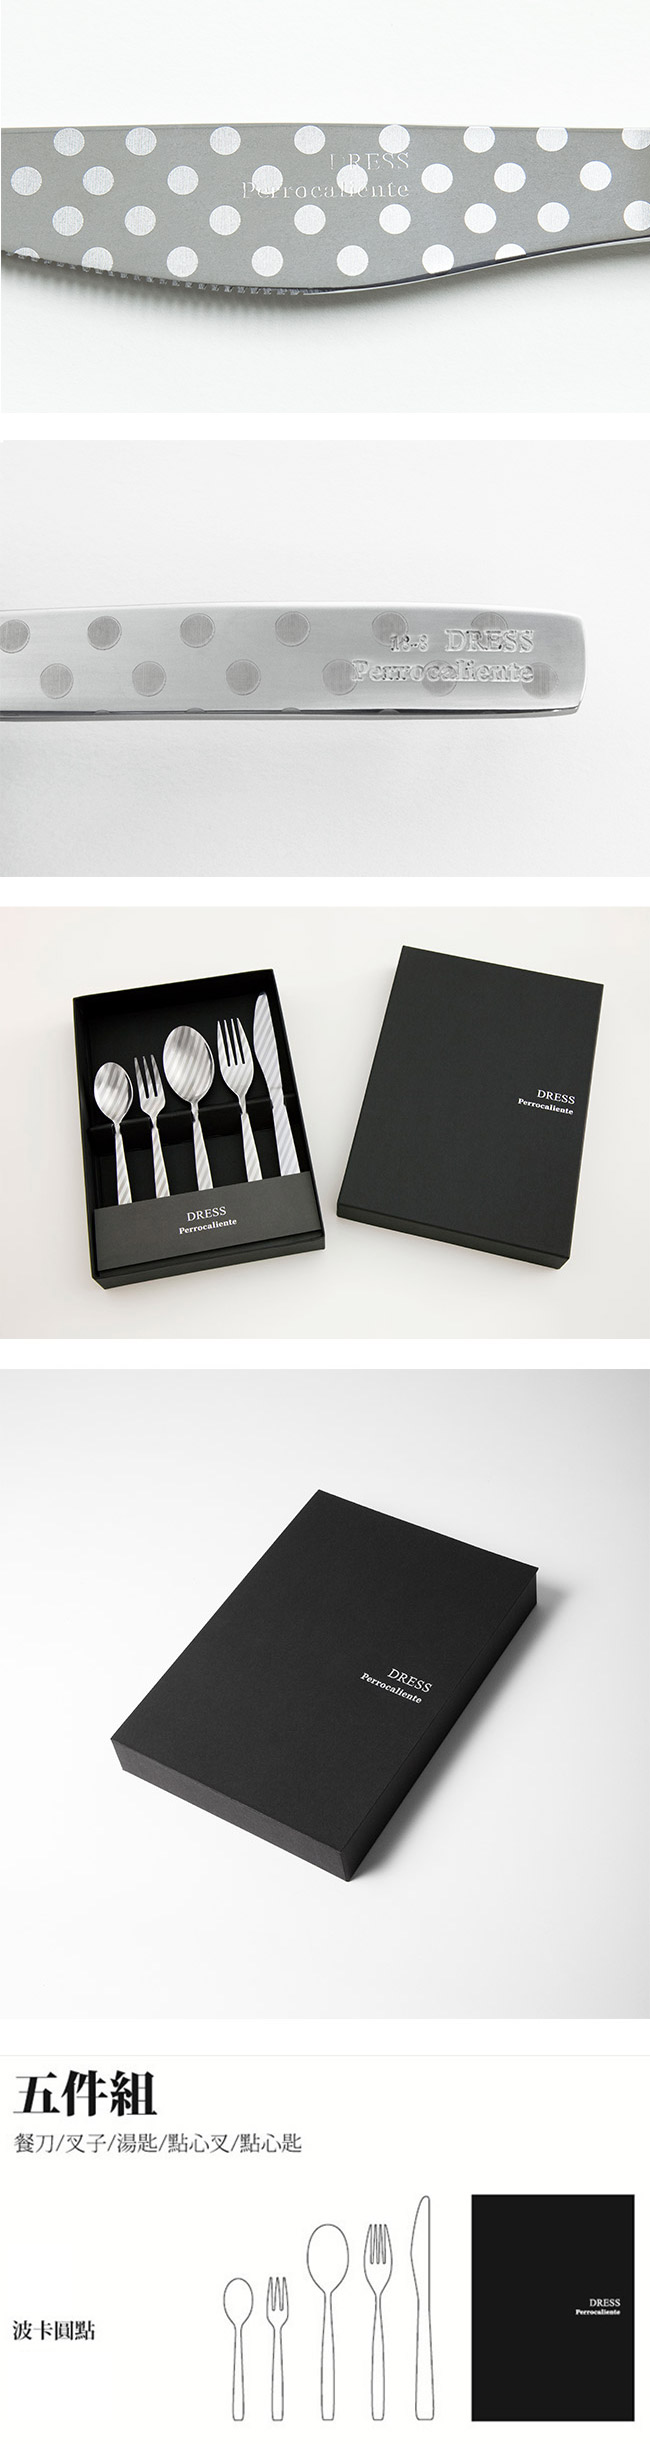 【3/26~4/1精選品牌9折優惠】Perrocaliente Dress Gift Set 銀色盒裝餐具組 五件組 波卡圓點